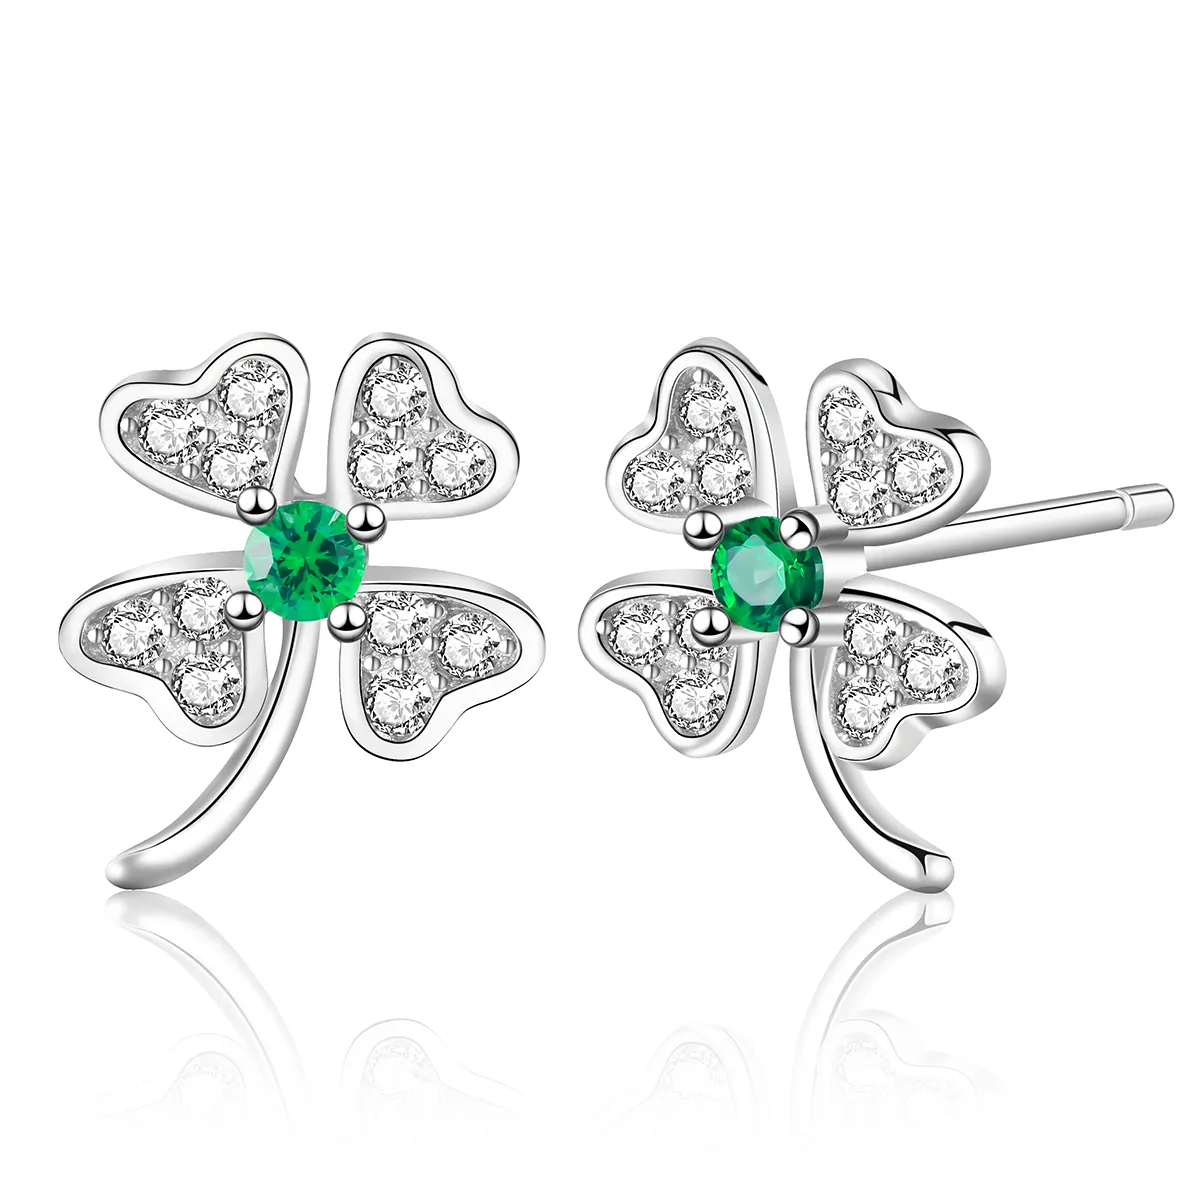 Luxus-Damenohrringe Smaragd glänzend rund geschnitten weiß CZ Vierblättriger Klee-Ohrring für Mädchen